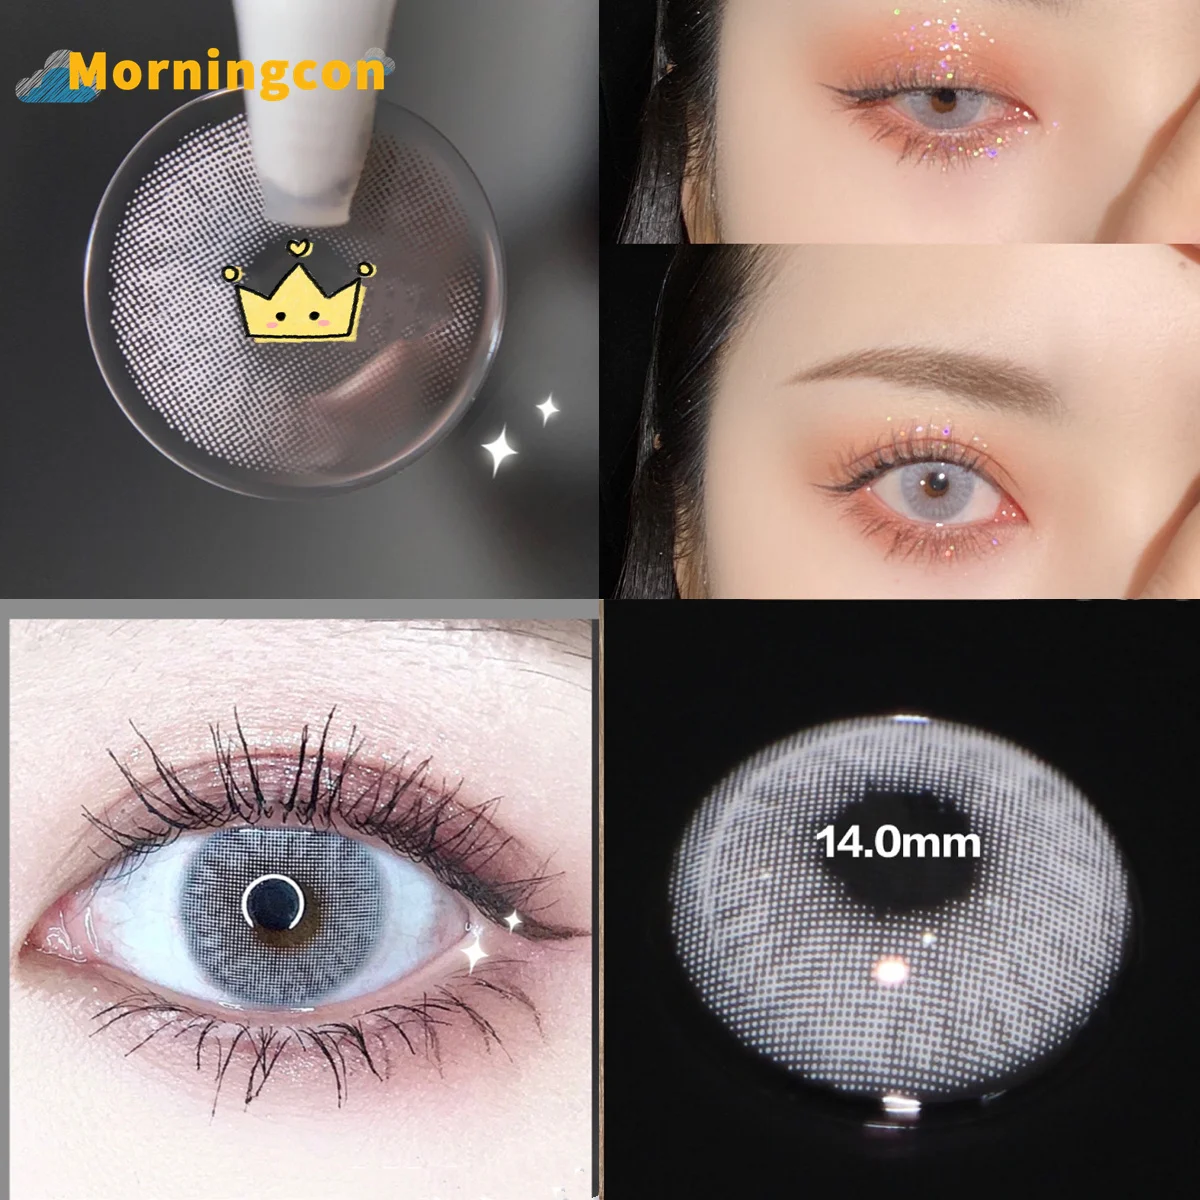 MORNINGCON Vinho Cinza Miopia Prescrição Suave Colorido Contatos Lentes Para os Olhos Pequenos Beleza Aluno maquiagem Natural Anual